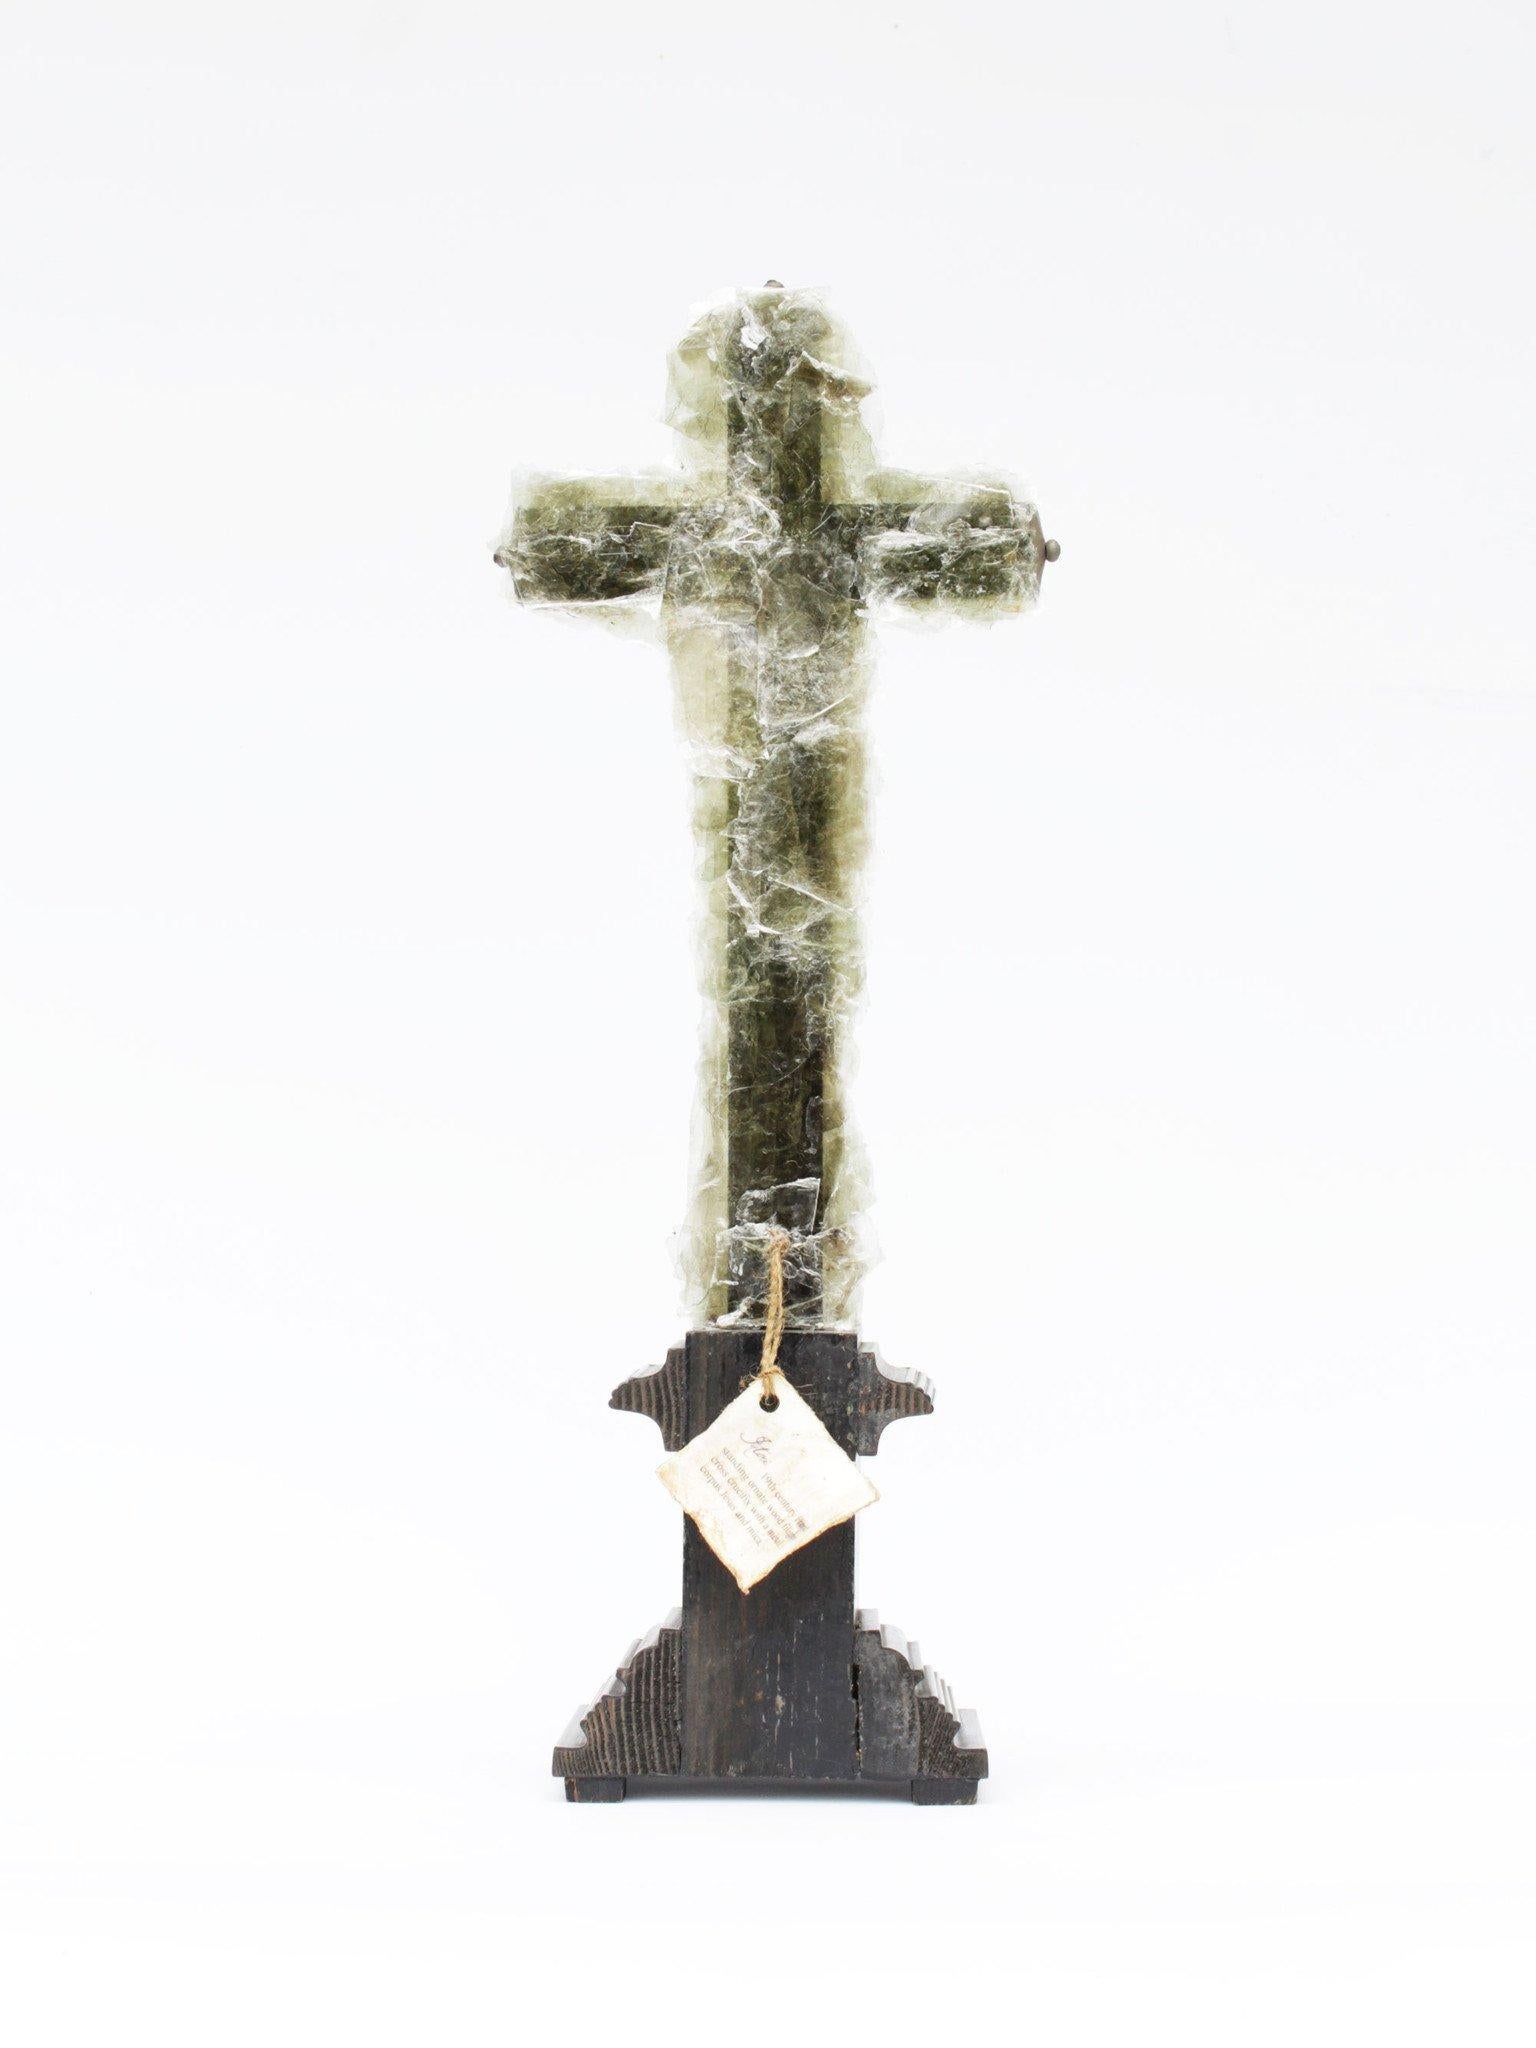 Crucifix français du 19ème siècle peint en marbre avec du mica vert. 

Le crucifix provient à l'origine d'un collectionneur en France. Le crucifix est peint en noir avec des détails marbrés en vert sur la base. La figure du Christ est en argent